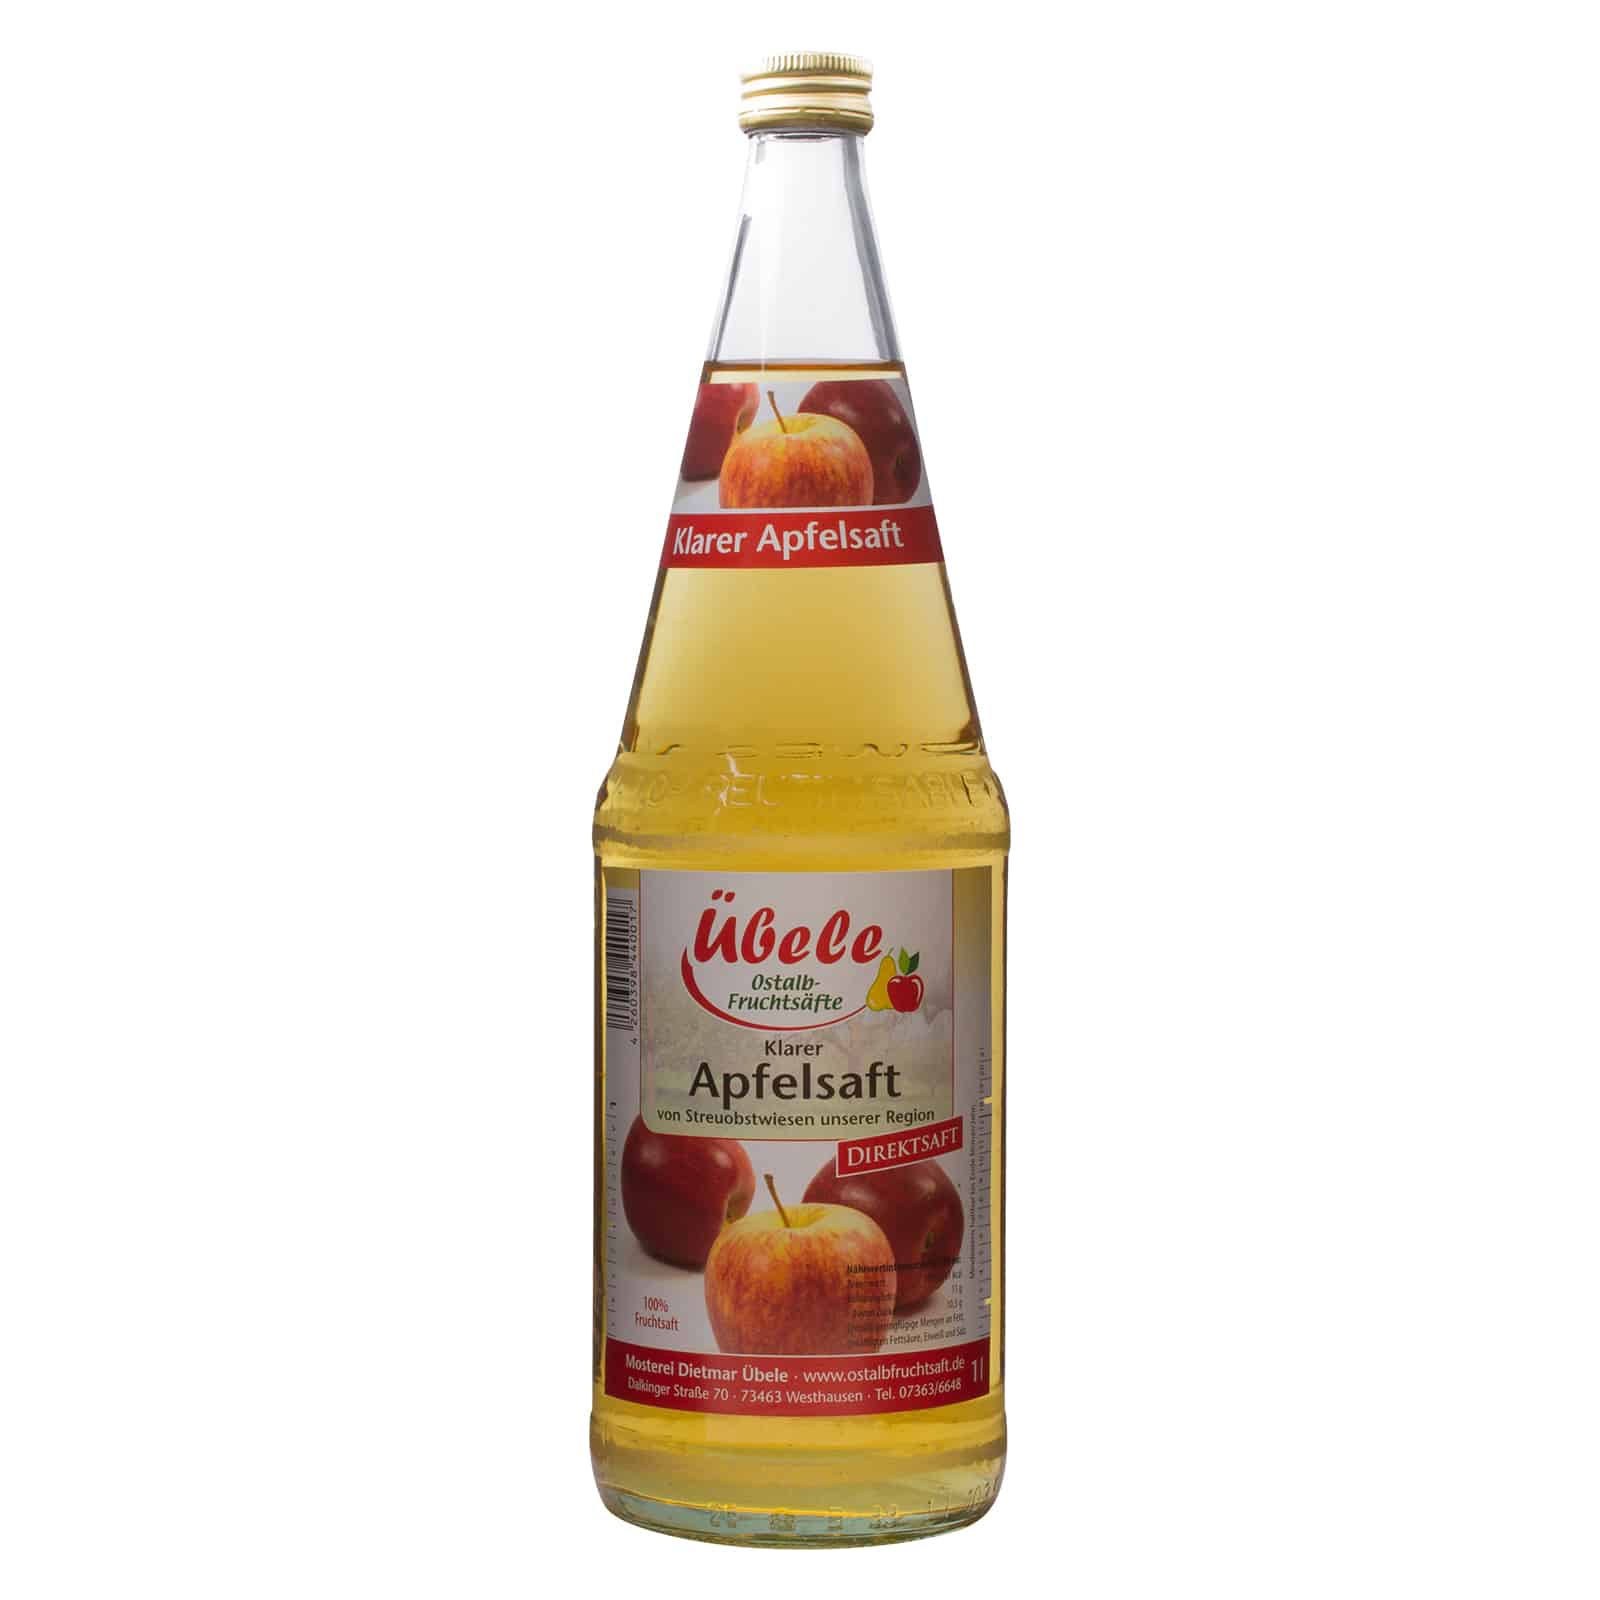 Klarer Apfelsaft » Kelterei und Edelbrennerei Obele